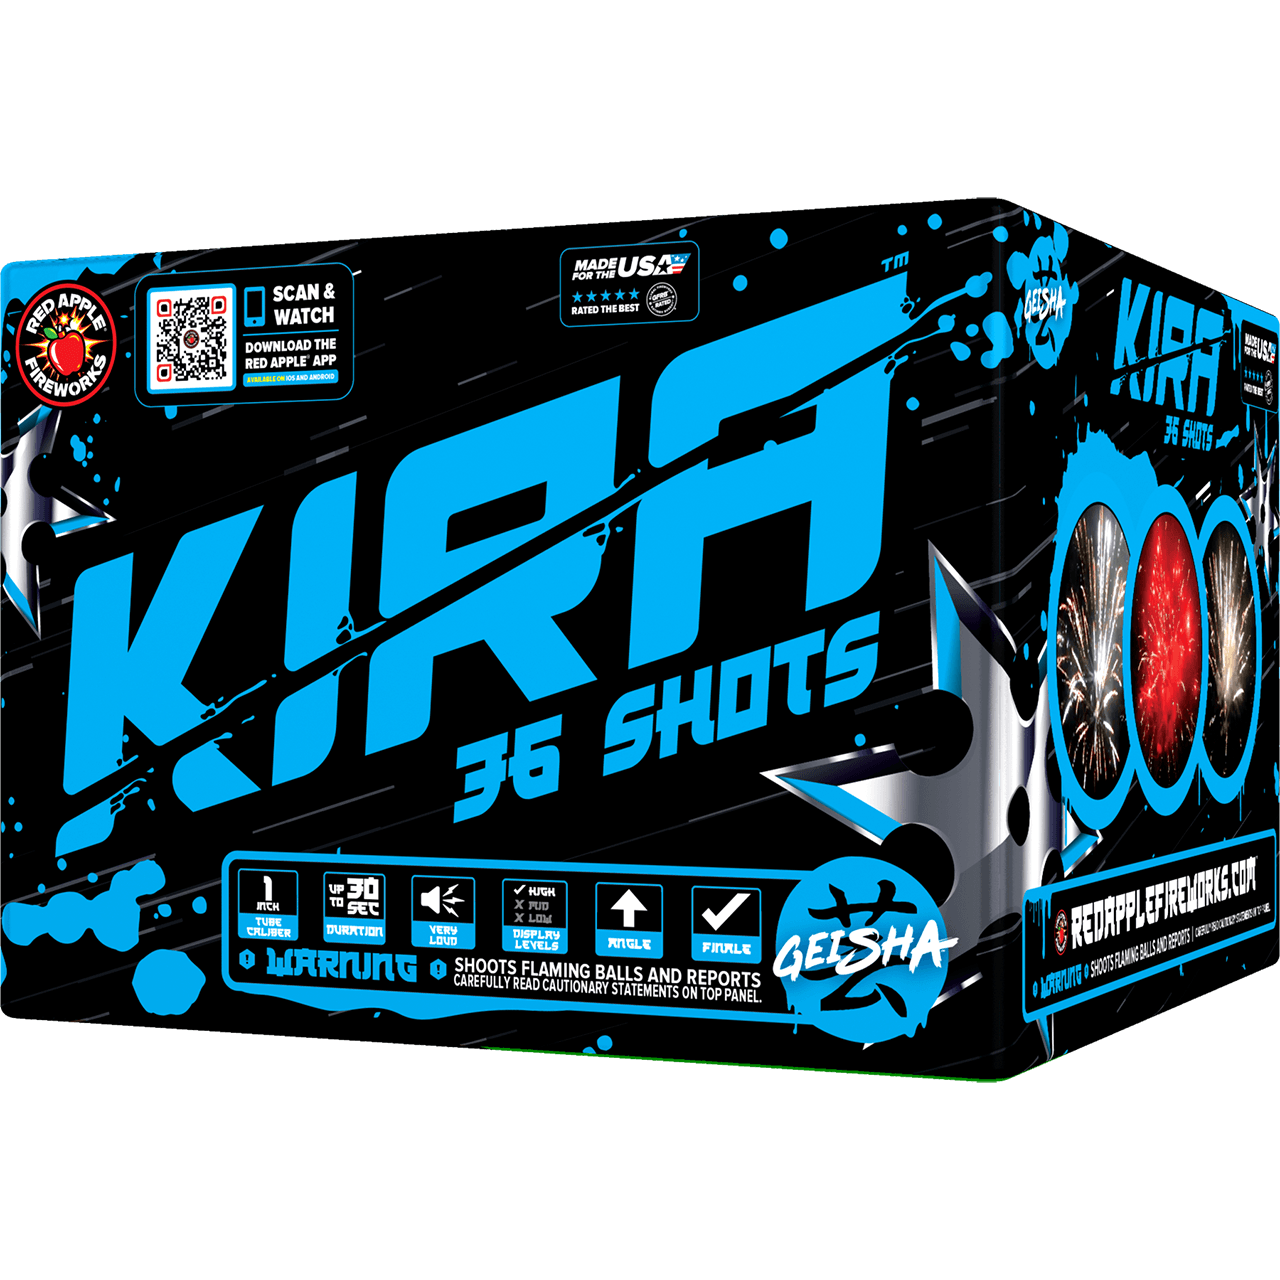 KIRA™ 36 Shots XL® Aerials